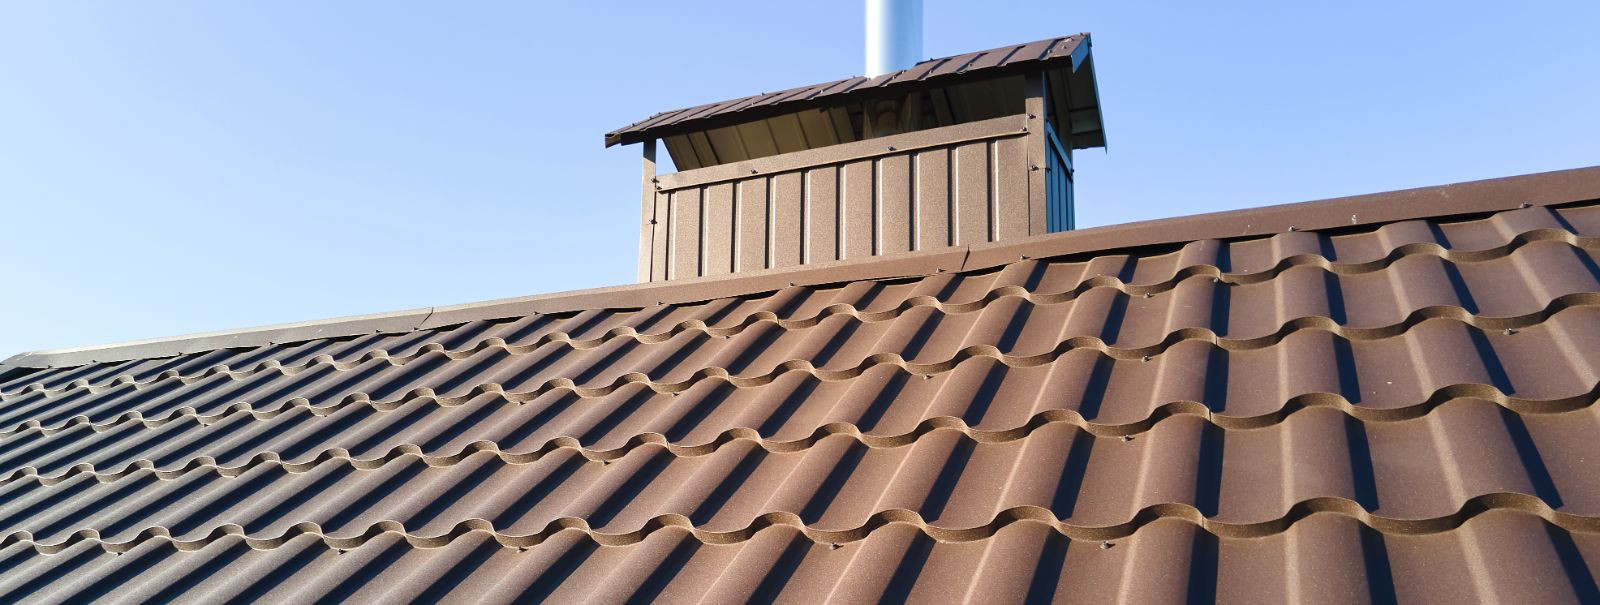 Teie kodu katuse seisukord on midagi, mida ei saa kunagi alahinnata. See toimib teie kodu kaitsekihina nii vihma kui ka lumetormide vastu ning tagab, et teie pe